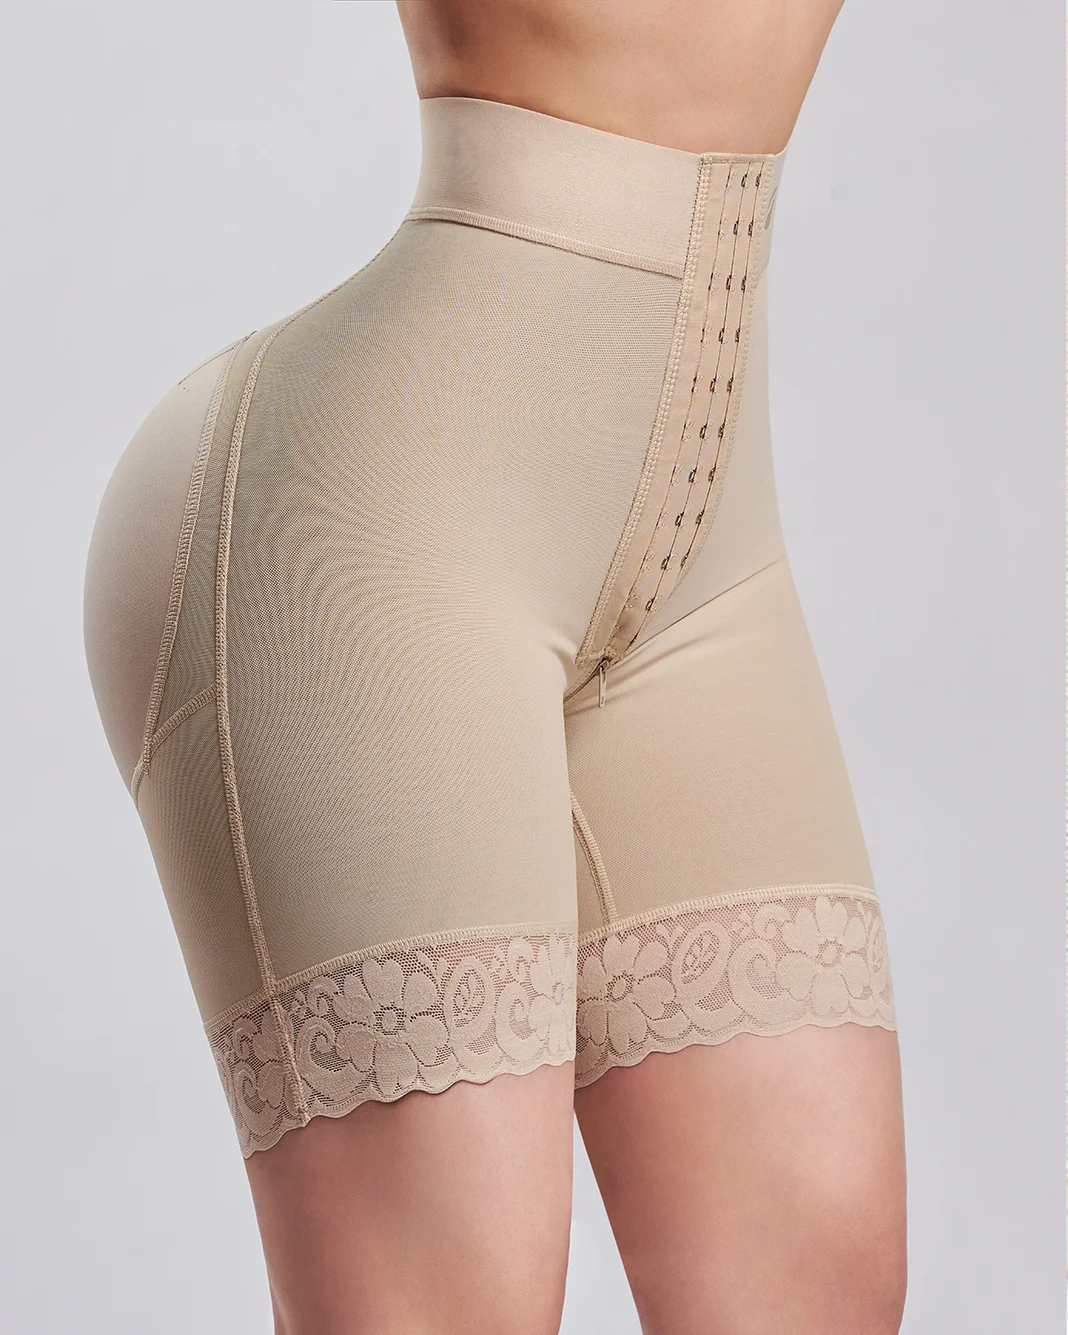 Women's Flat High Waist Stretch Shorts Fajas Colombianas Butt Lifter Lace High Waist Booty Lifting Hip Enhancer Bodysuit Skims